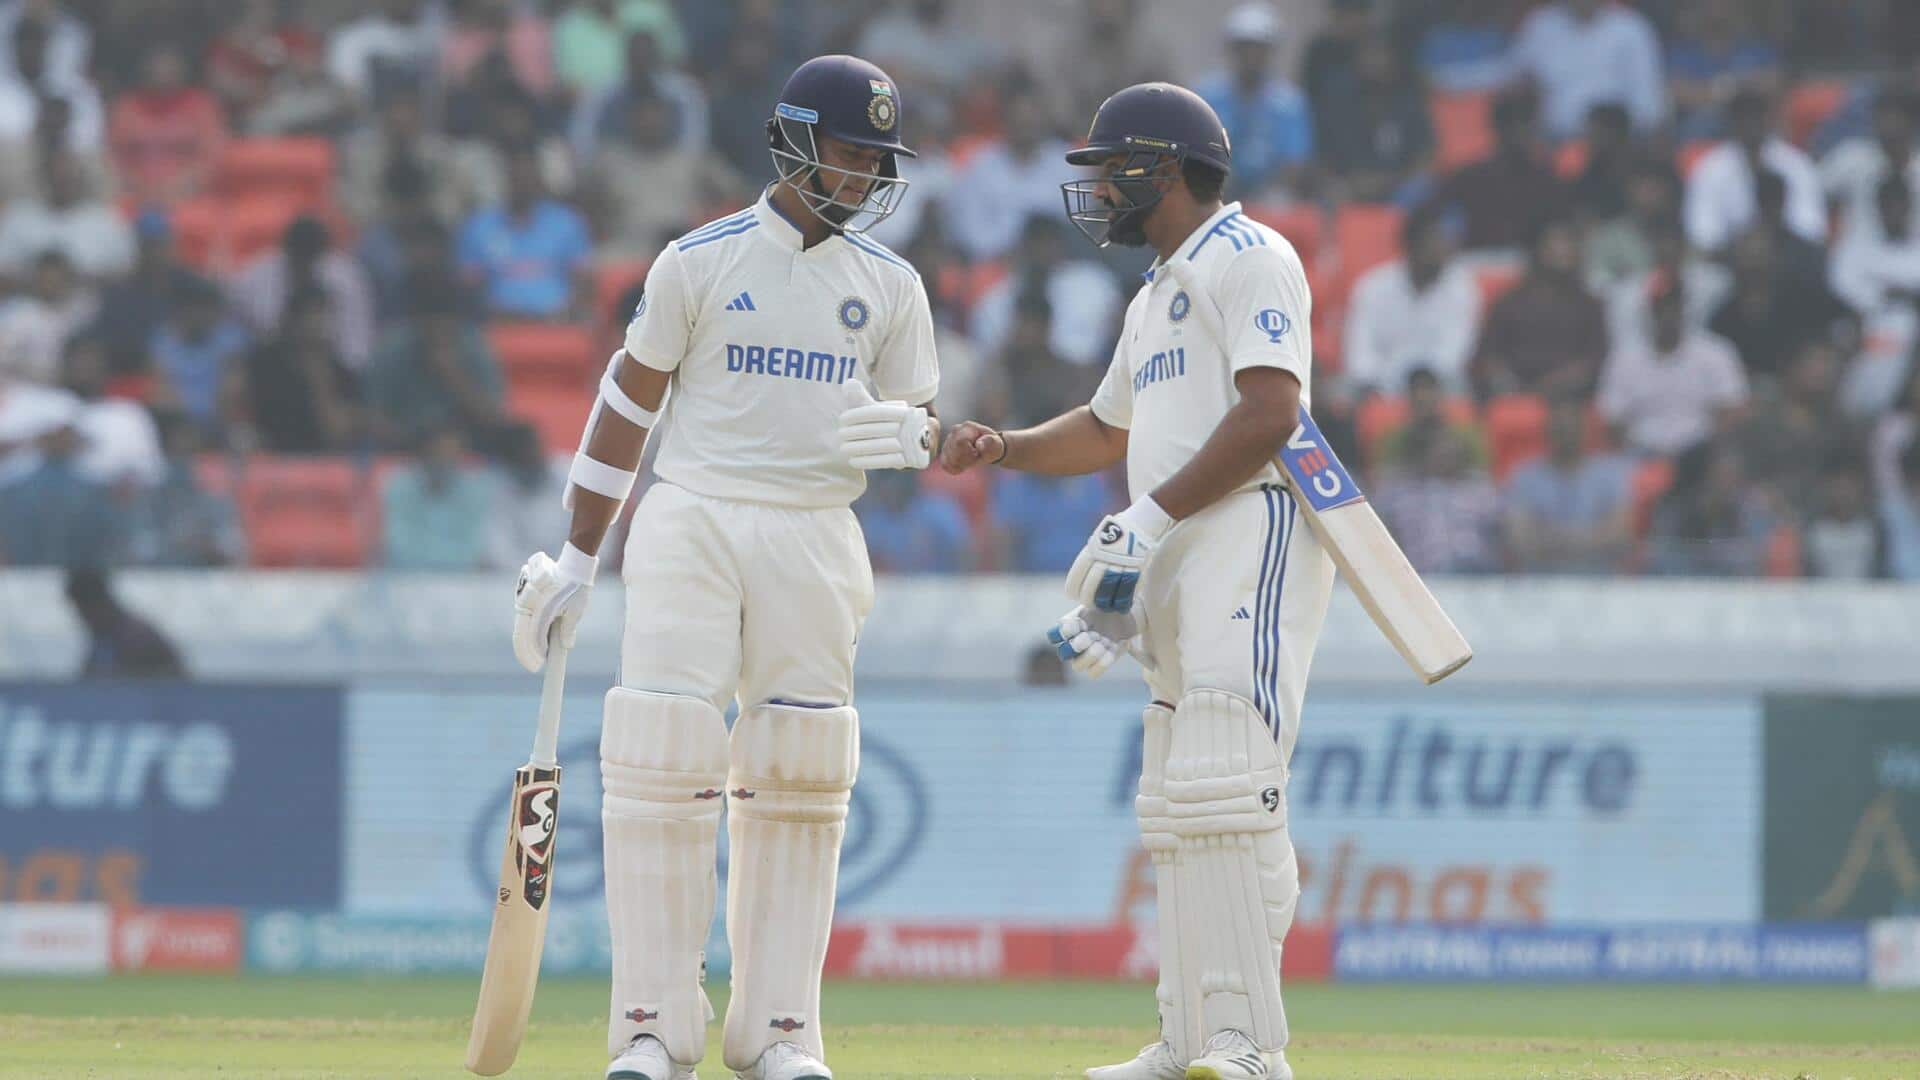 पहला टेस्ट: इंग्लैंड के खिलाफ भारत के नाम रहा पहला दिन, यशस्वी जायसवाल की उम्दा पारी